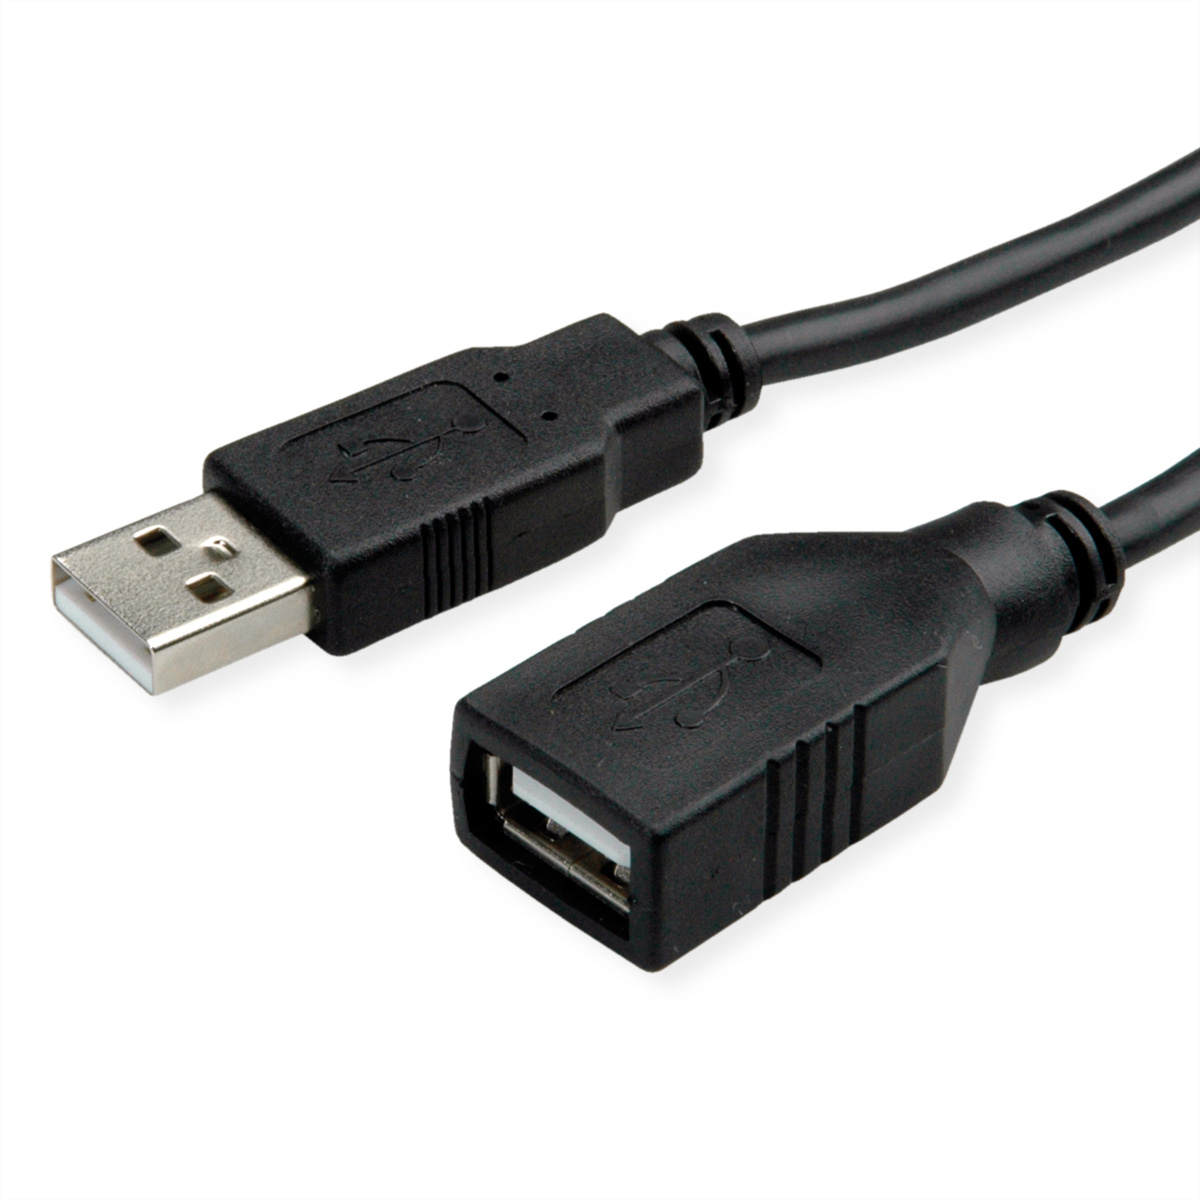 ROLINE USB 2.0 aktive Kabelverlängerung, schwarz, 15 m